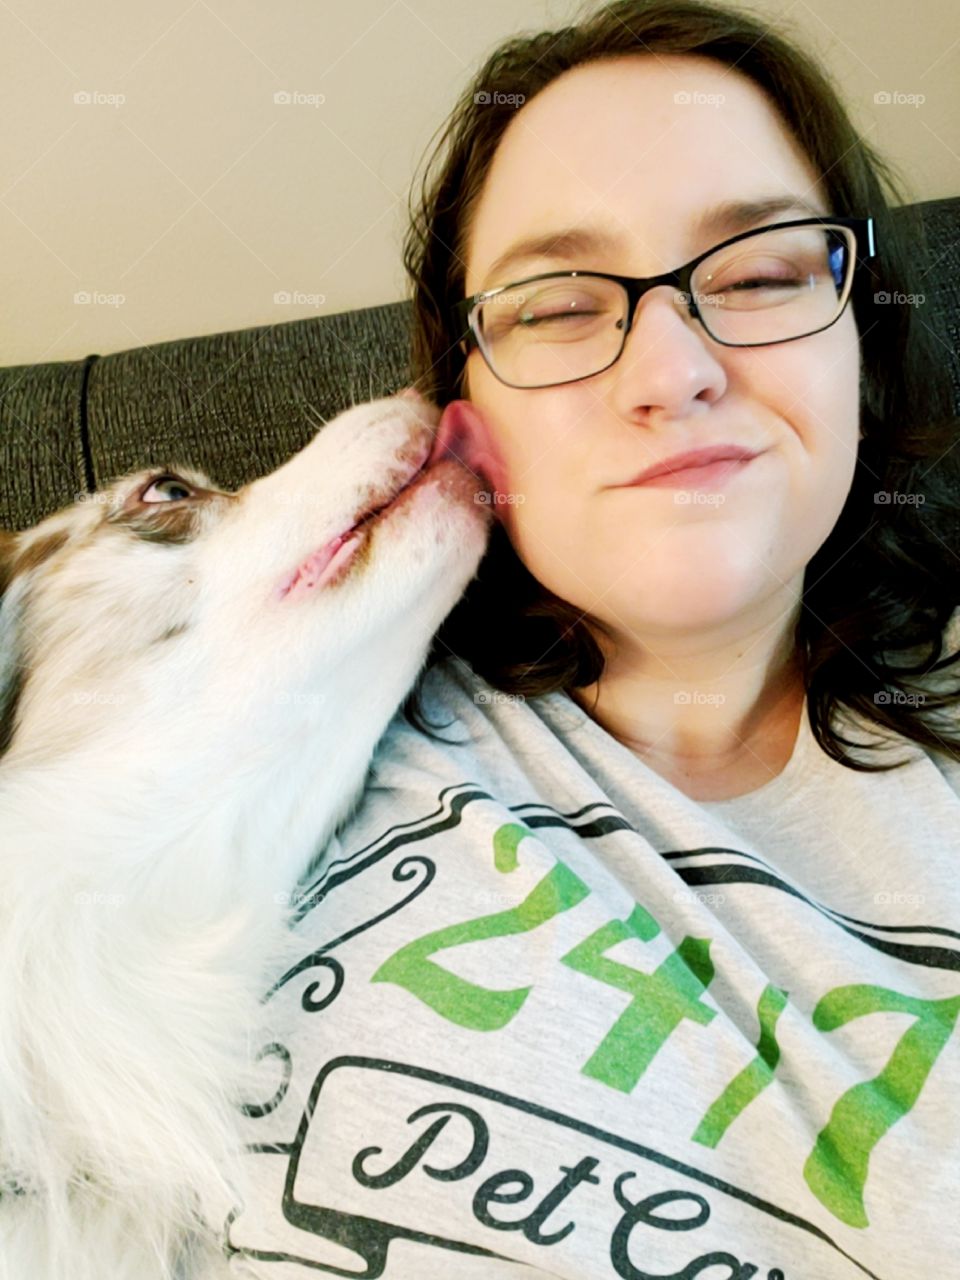 puppy kisses